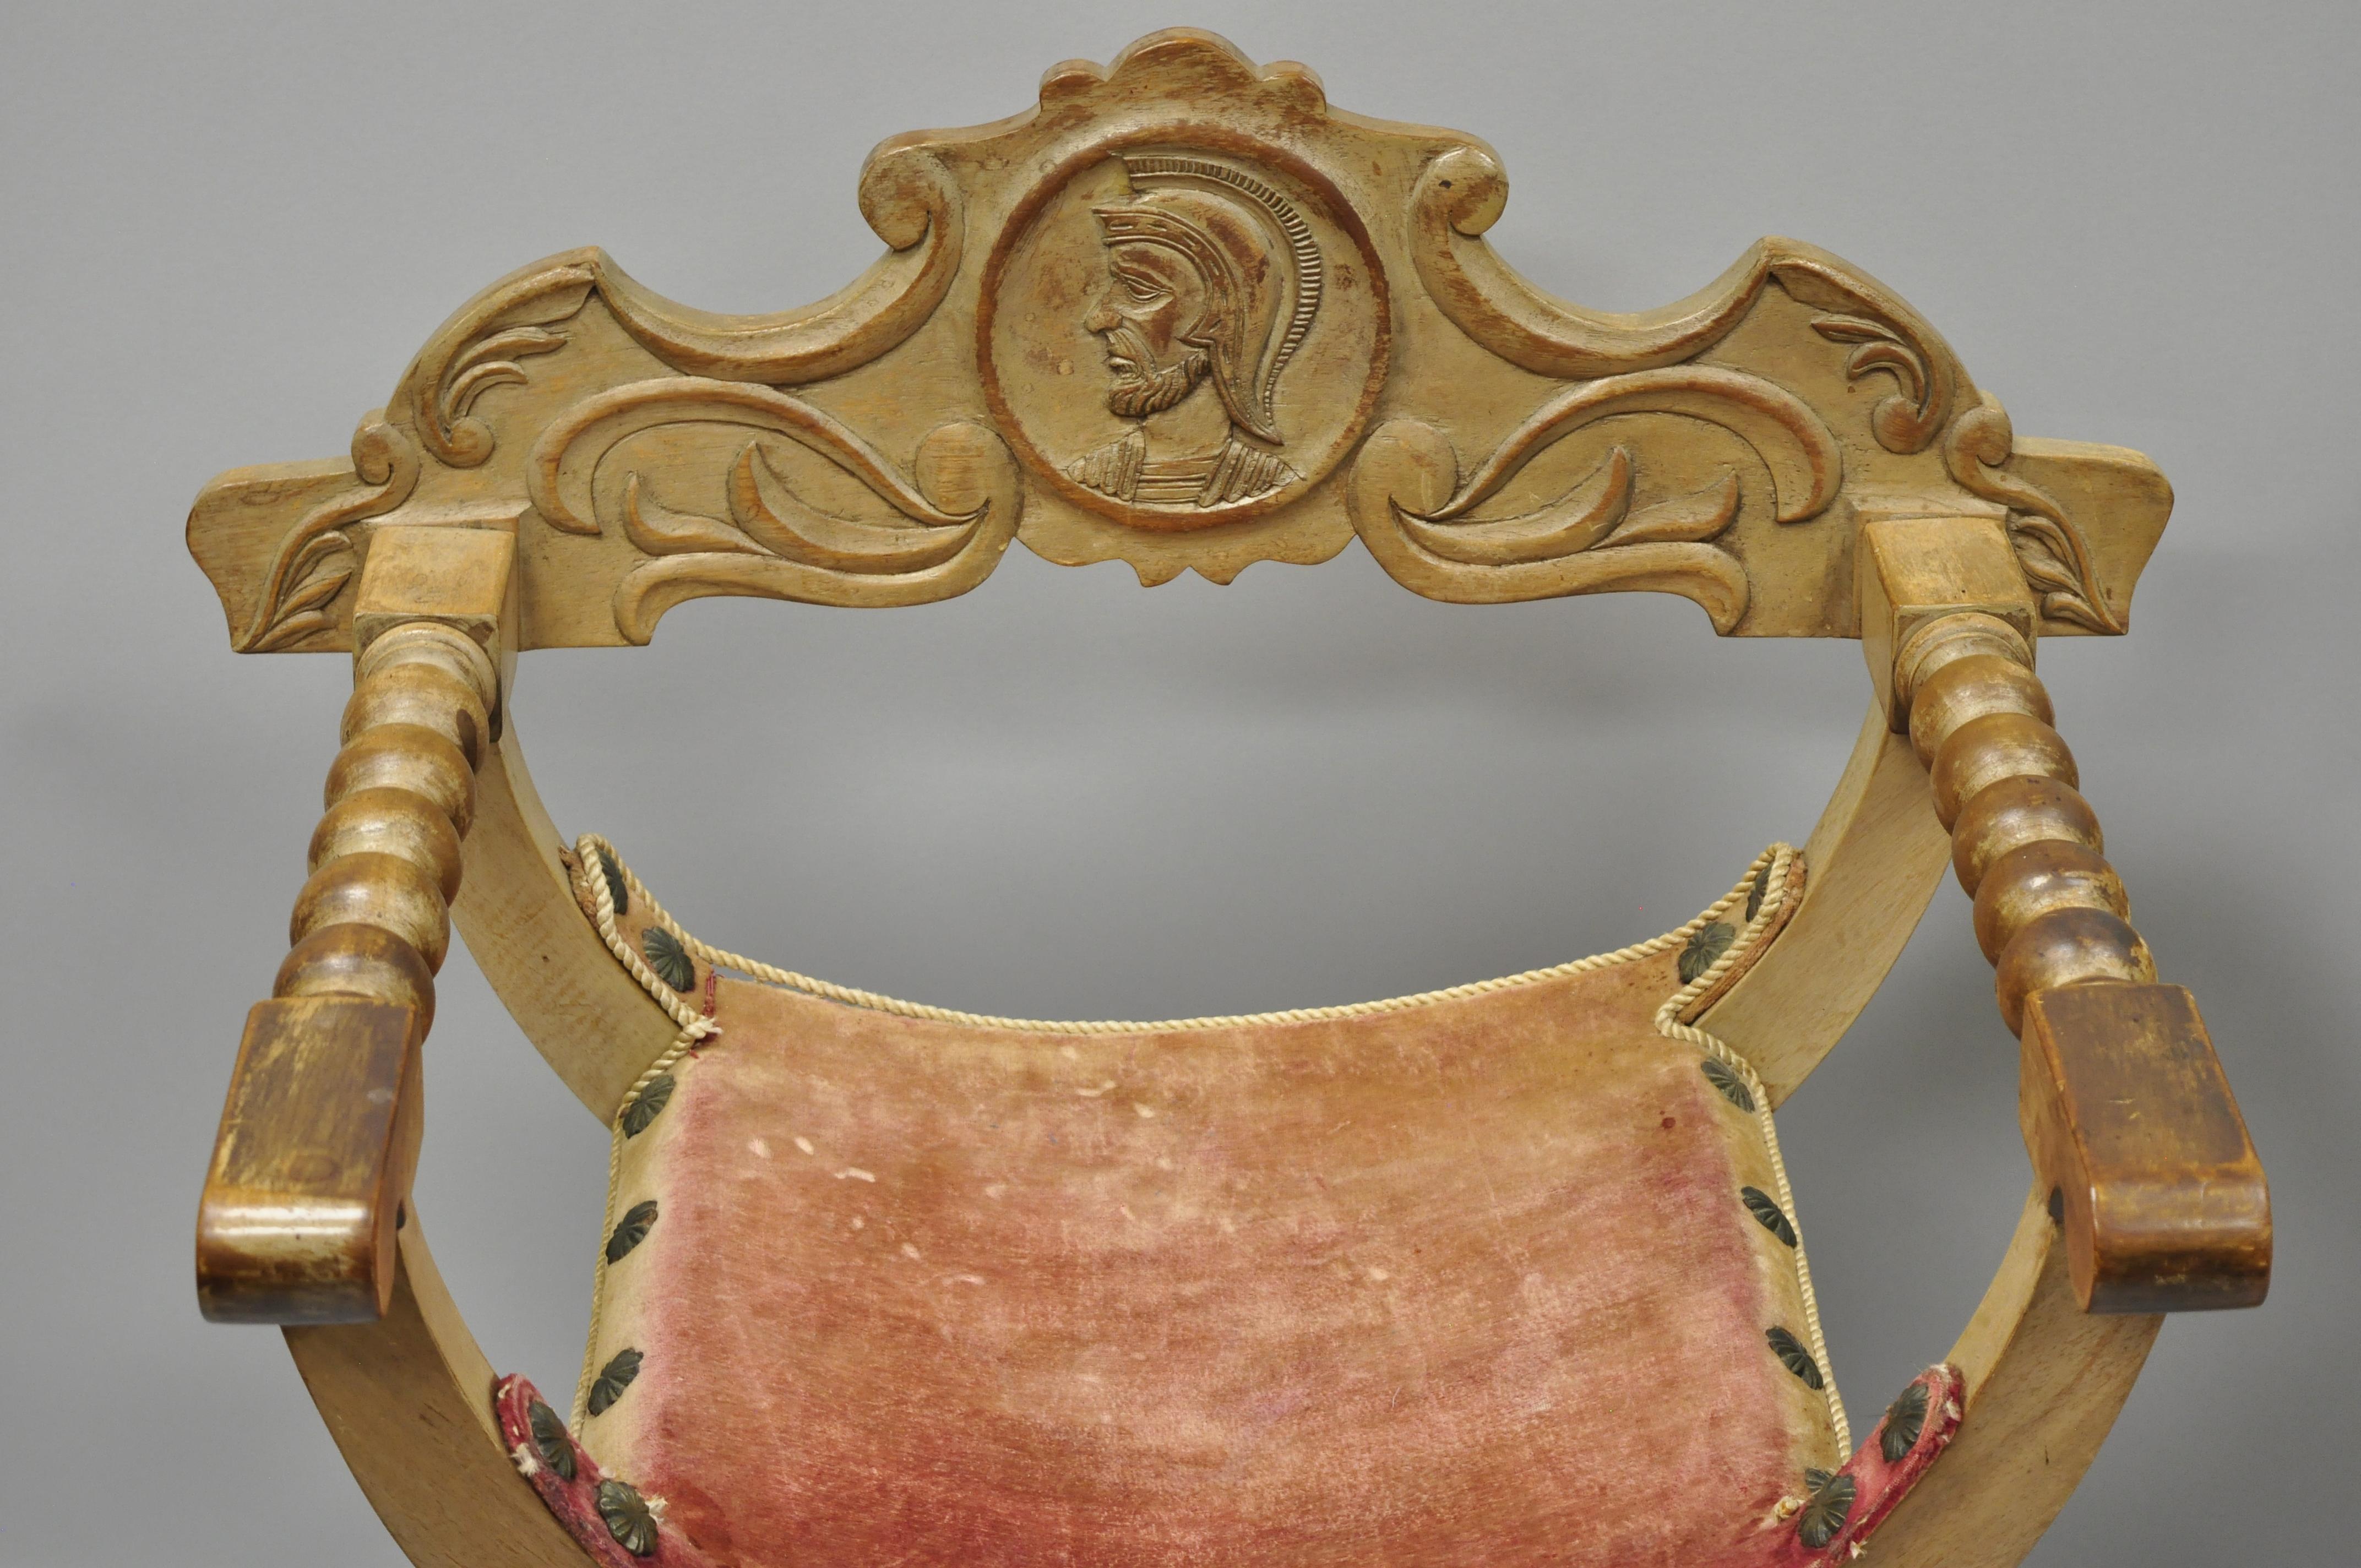 European Antique Spanish Renaissance Curule Savonarola Throne Chairs Armchairs, a Pair